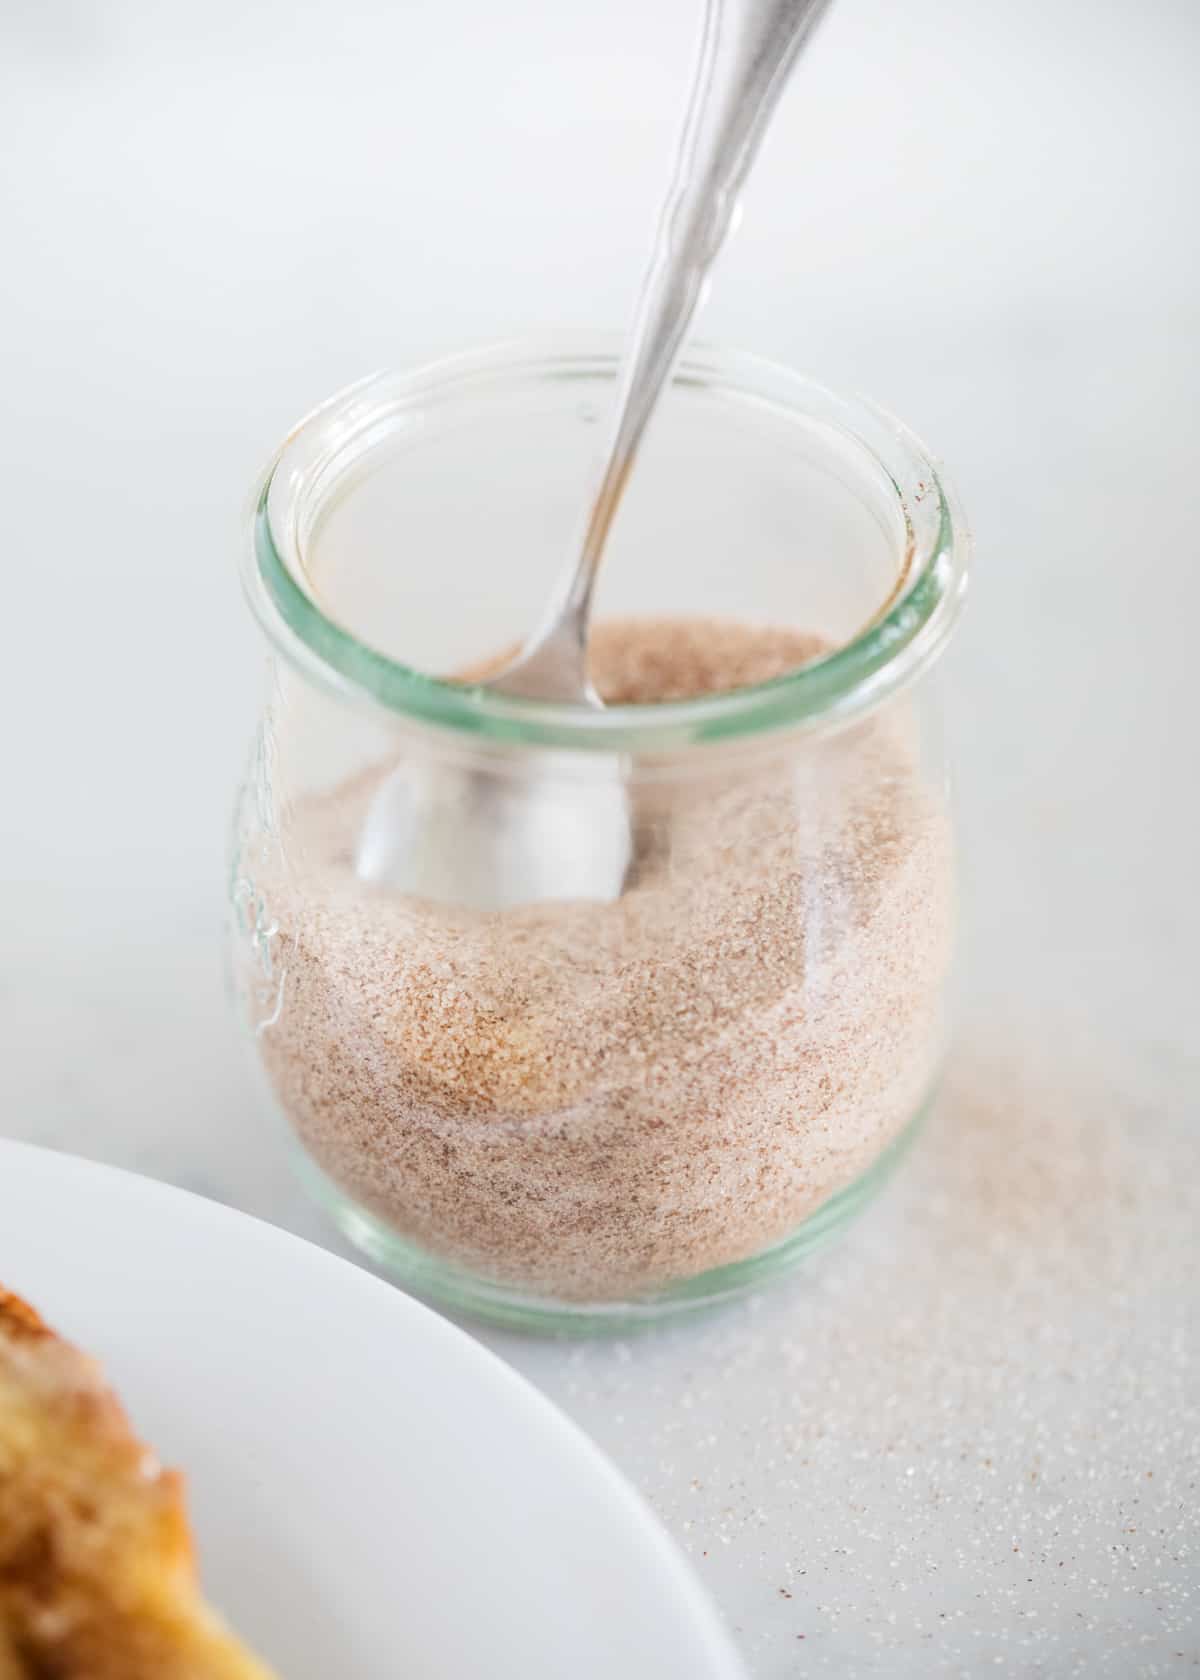 Cinnamon sugar in a glass jar with spoon.